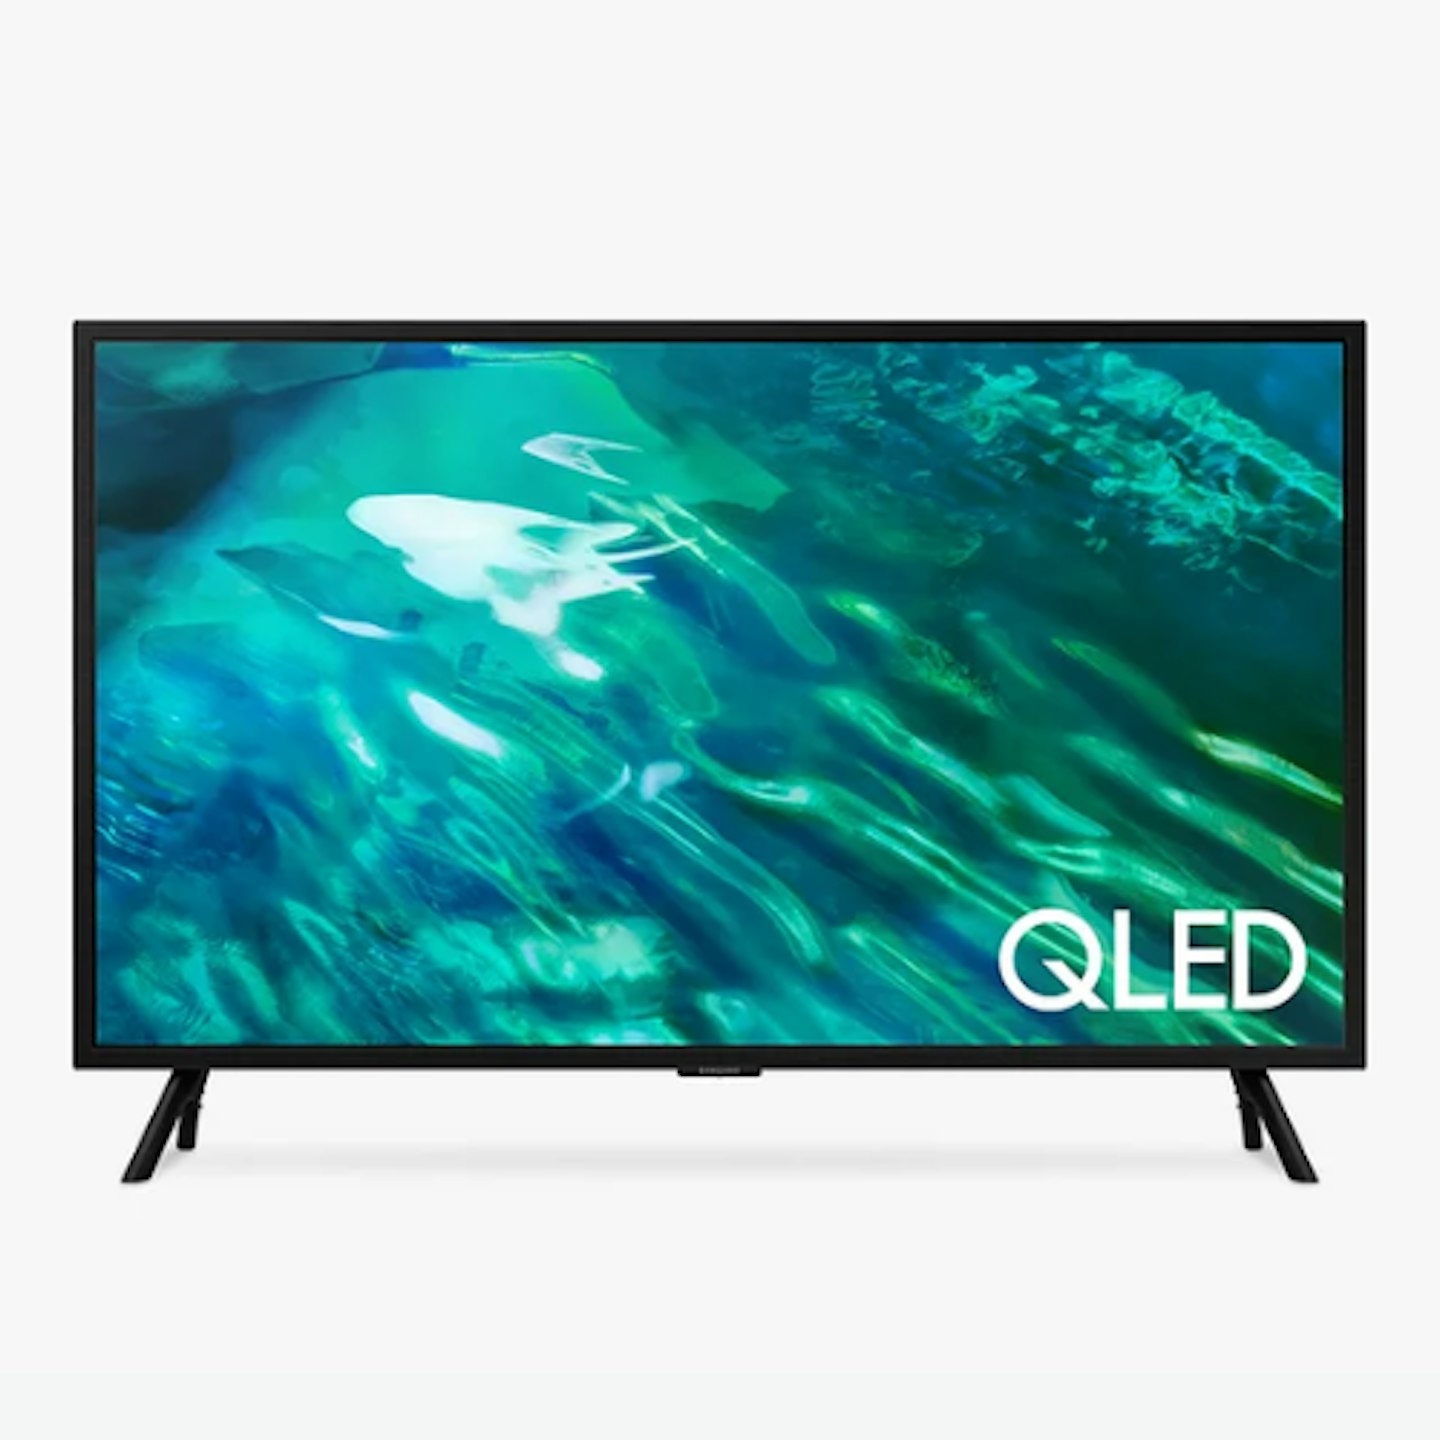 Samsung QE32Q50A (2021) QLED HDR Full HD Smart TV